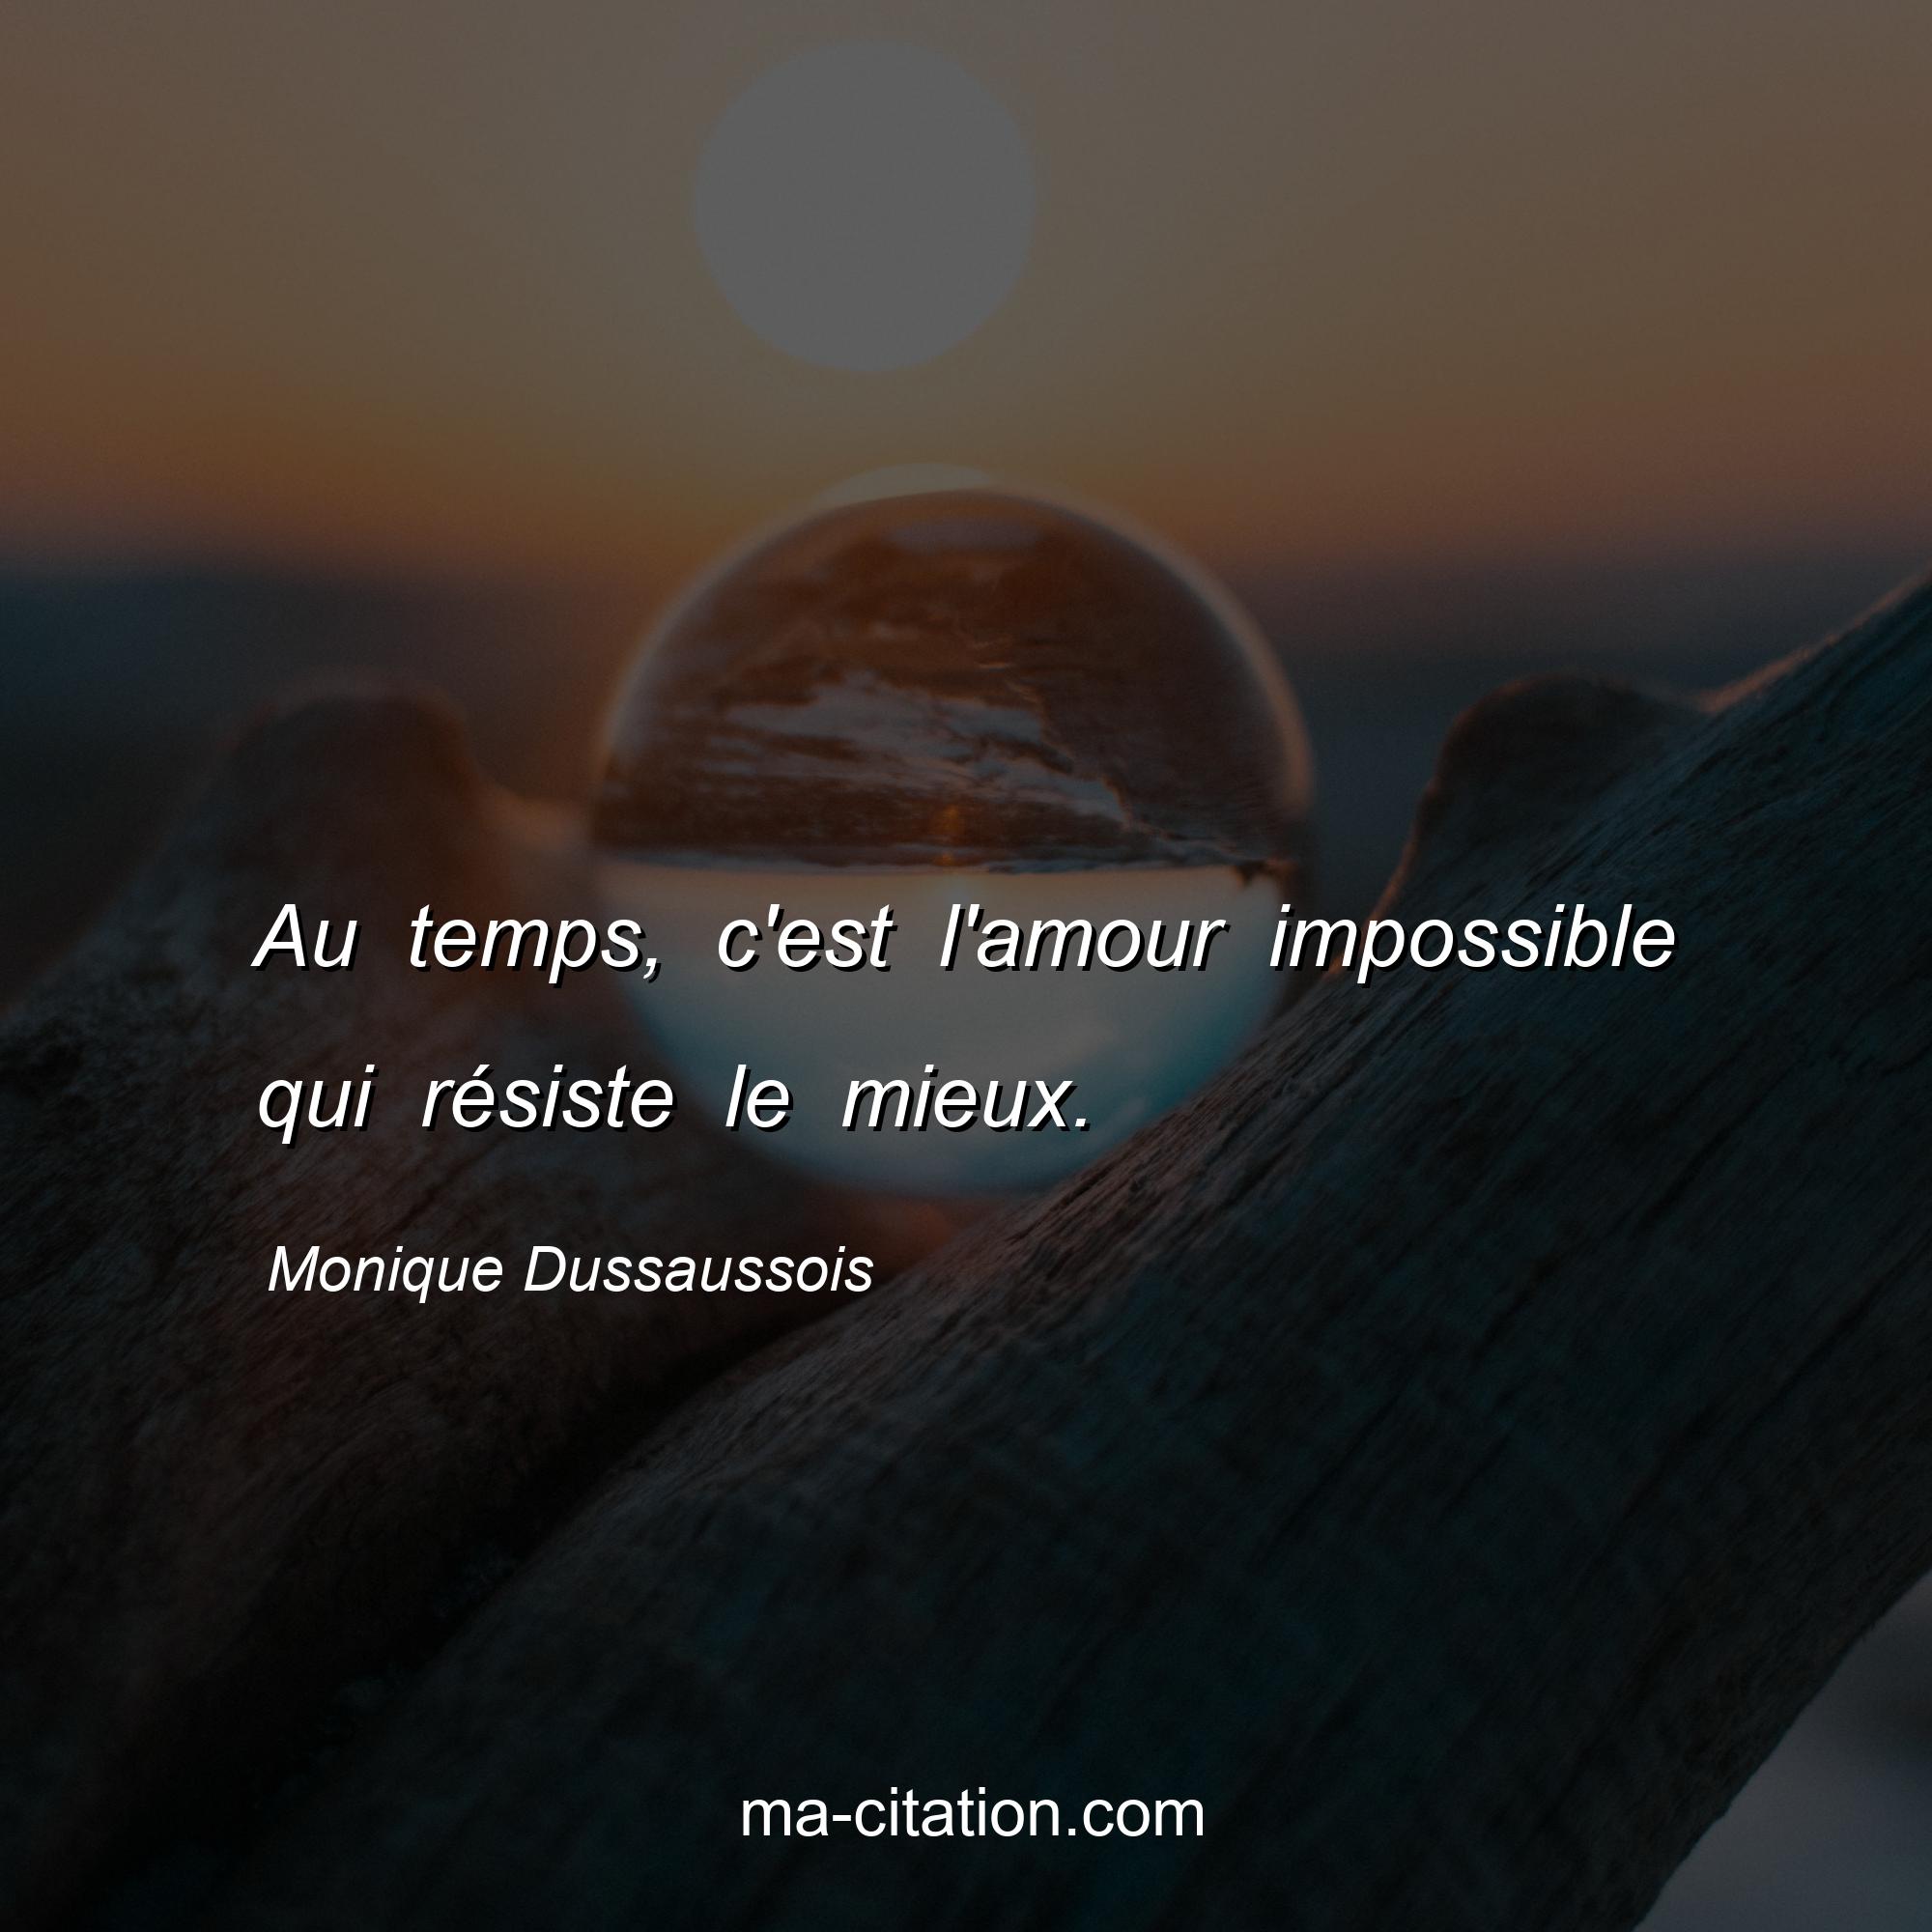 Monique Dussaussois : Au temps, c'est l'amour impossible qui résiste le mieux.